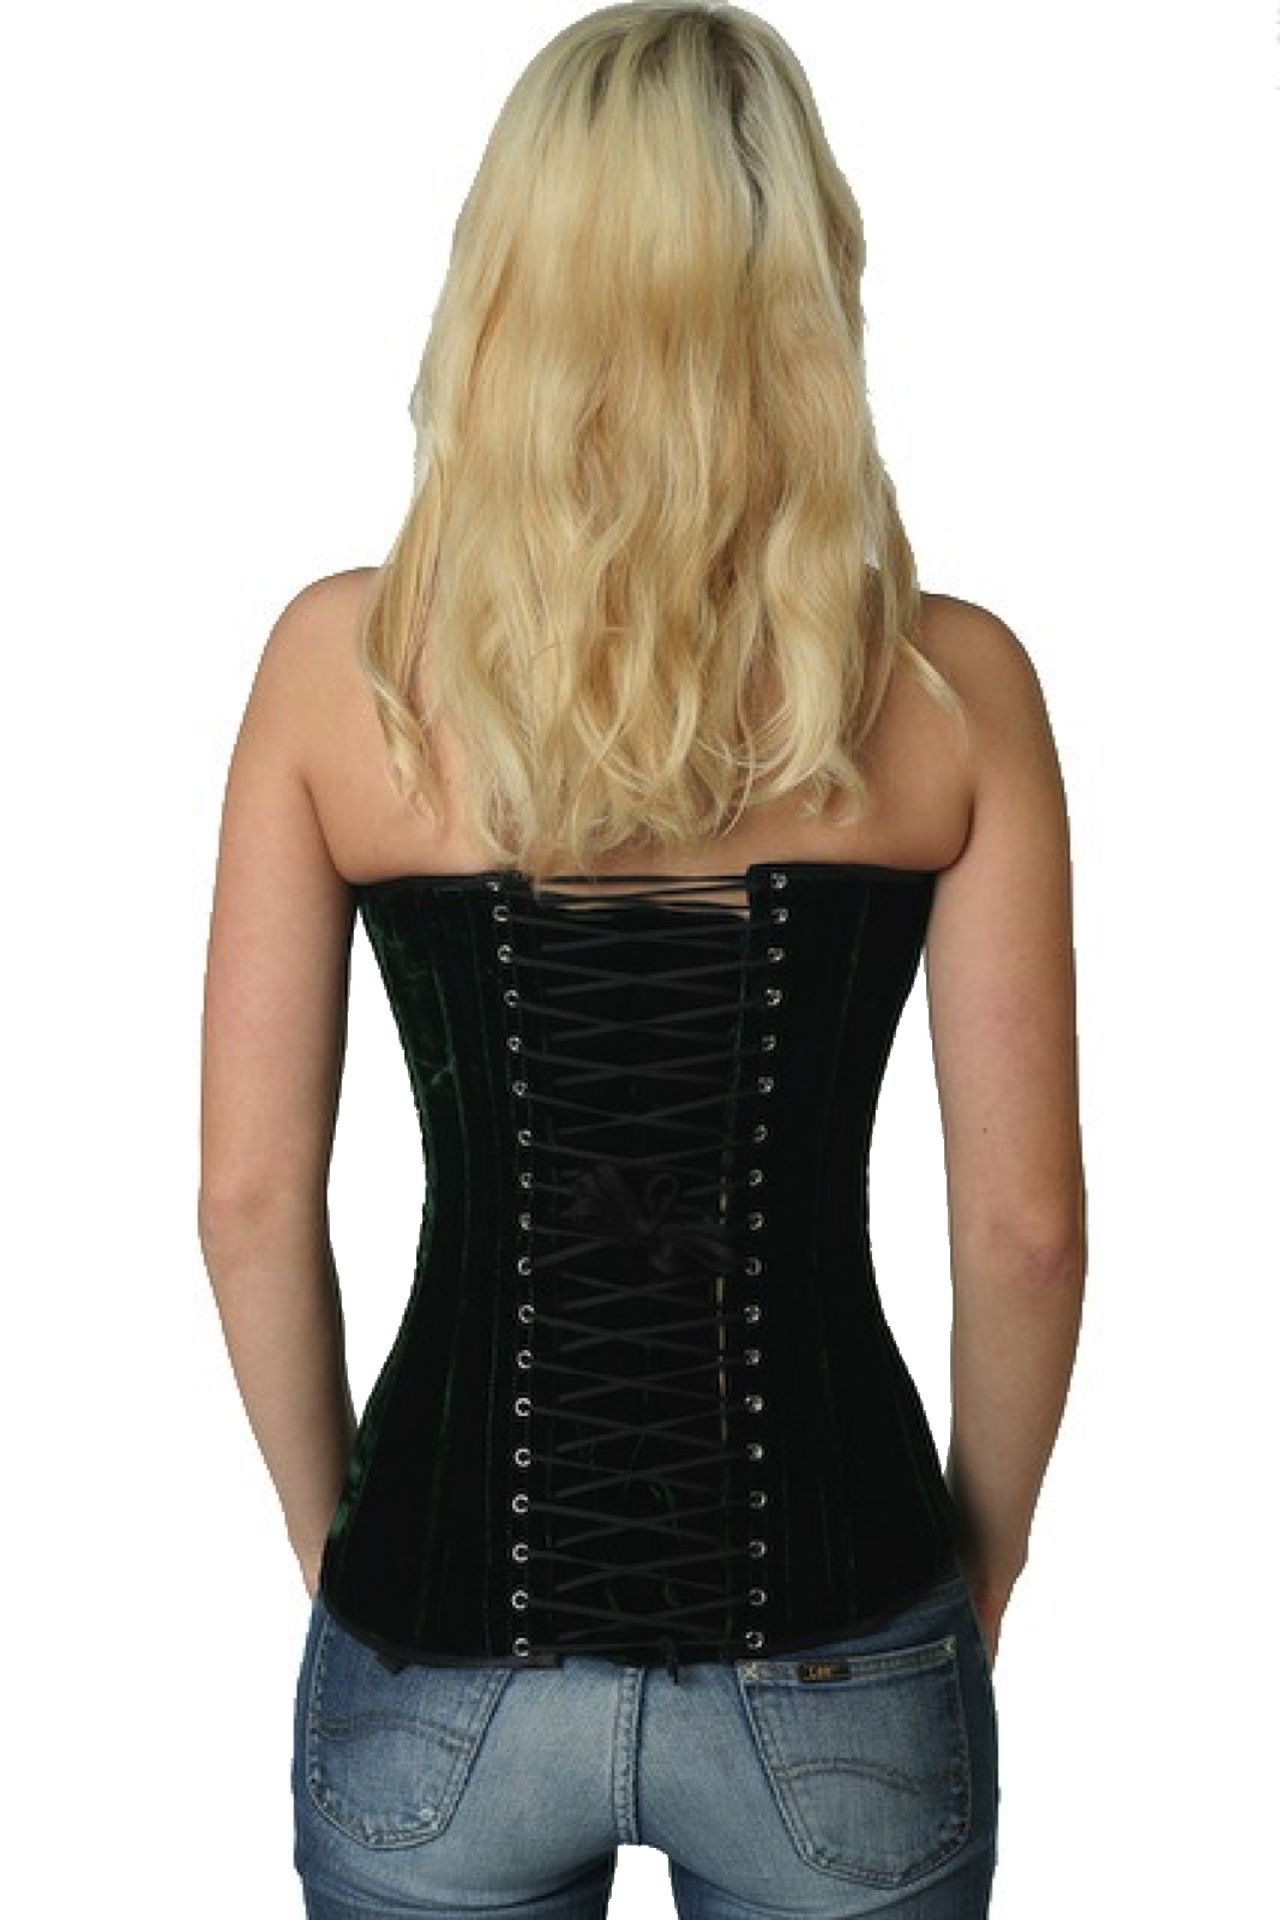 Fluweel corset groen volborst Korset vy63